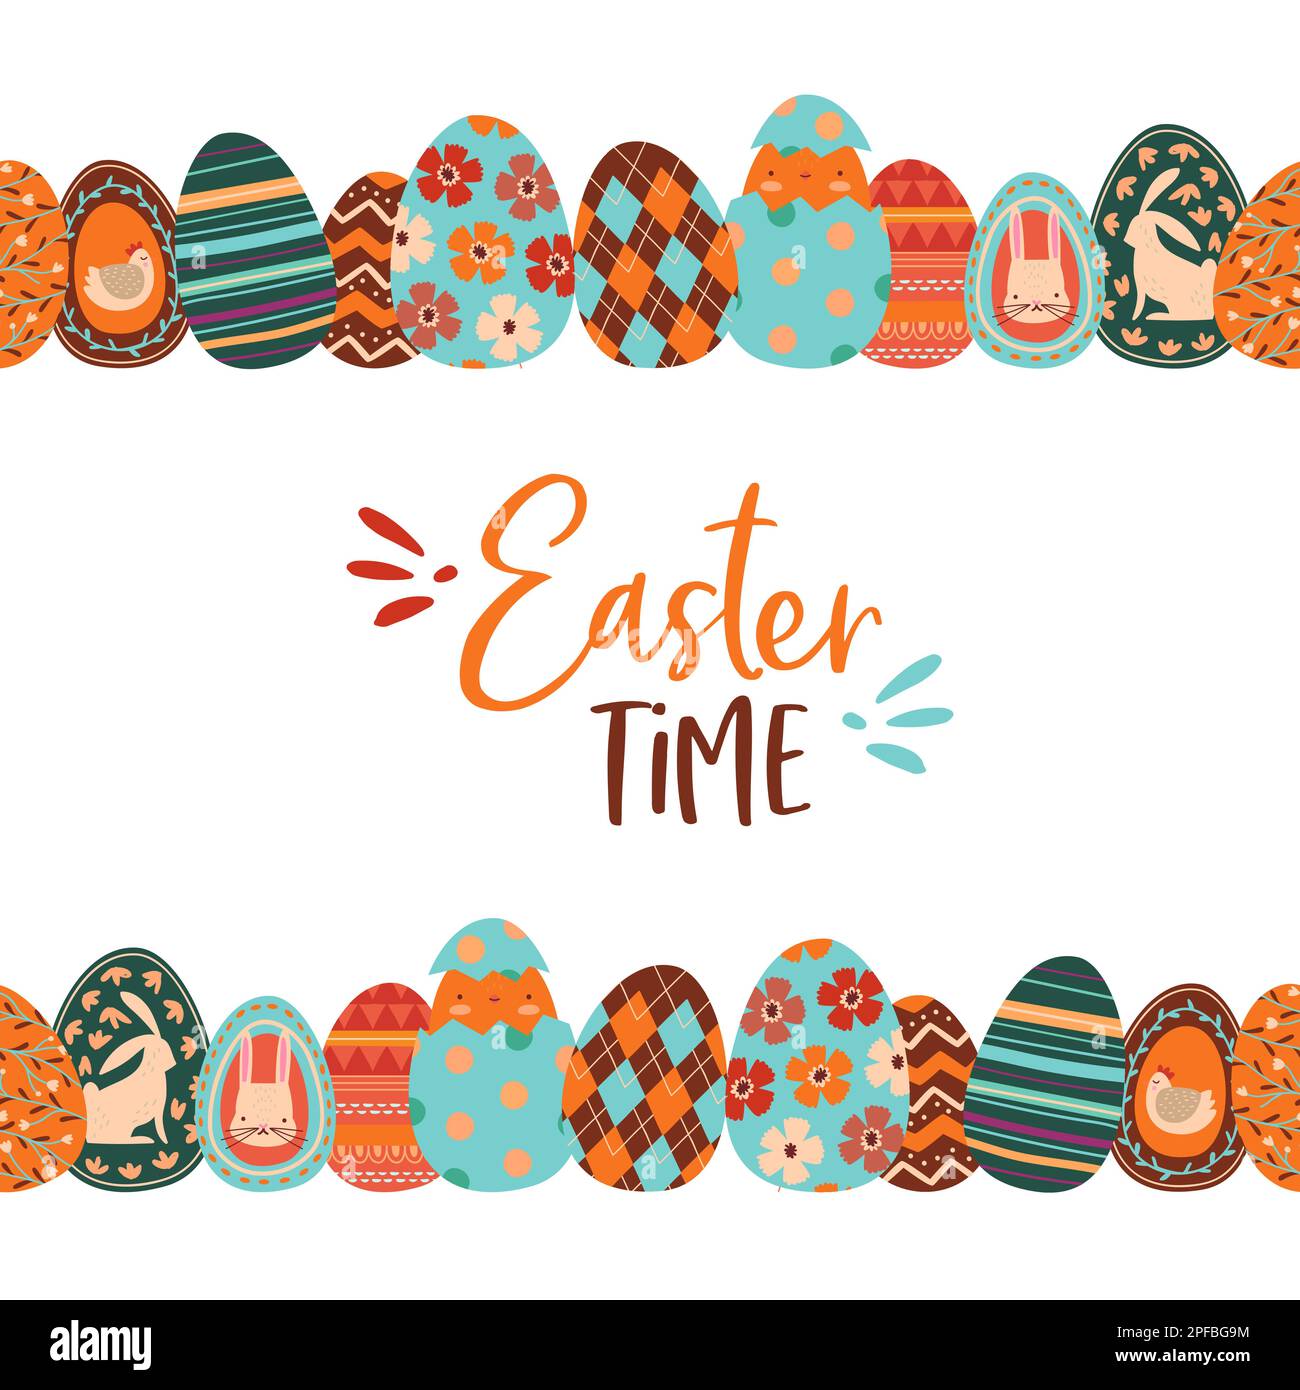 Fröhliche Ostern niedliche Zeichentrickkarte Illustration von bunten pastellfarbenen Kanincheneiern. Frühlingssaison handgezeichnete Kritzeleien, Blumen, folkloristischer dez Stock Vektor